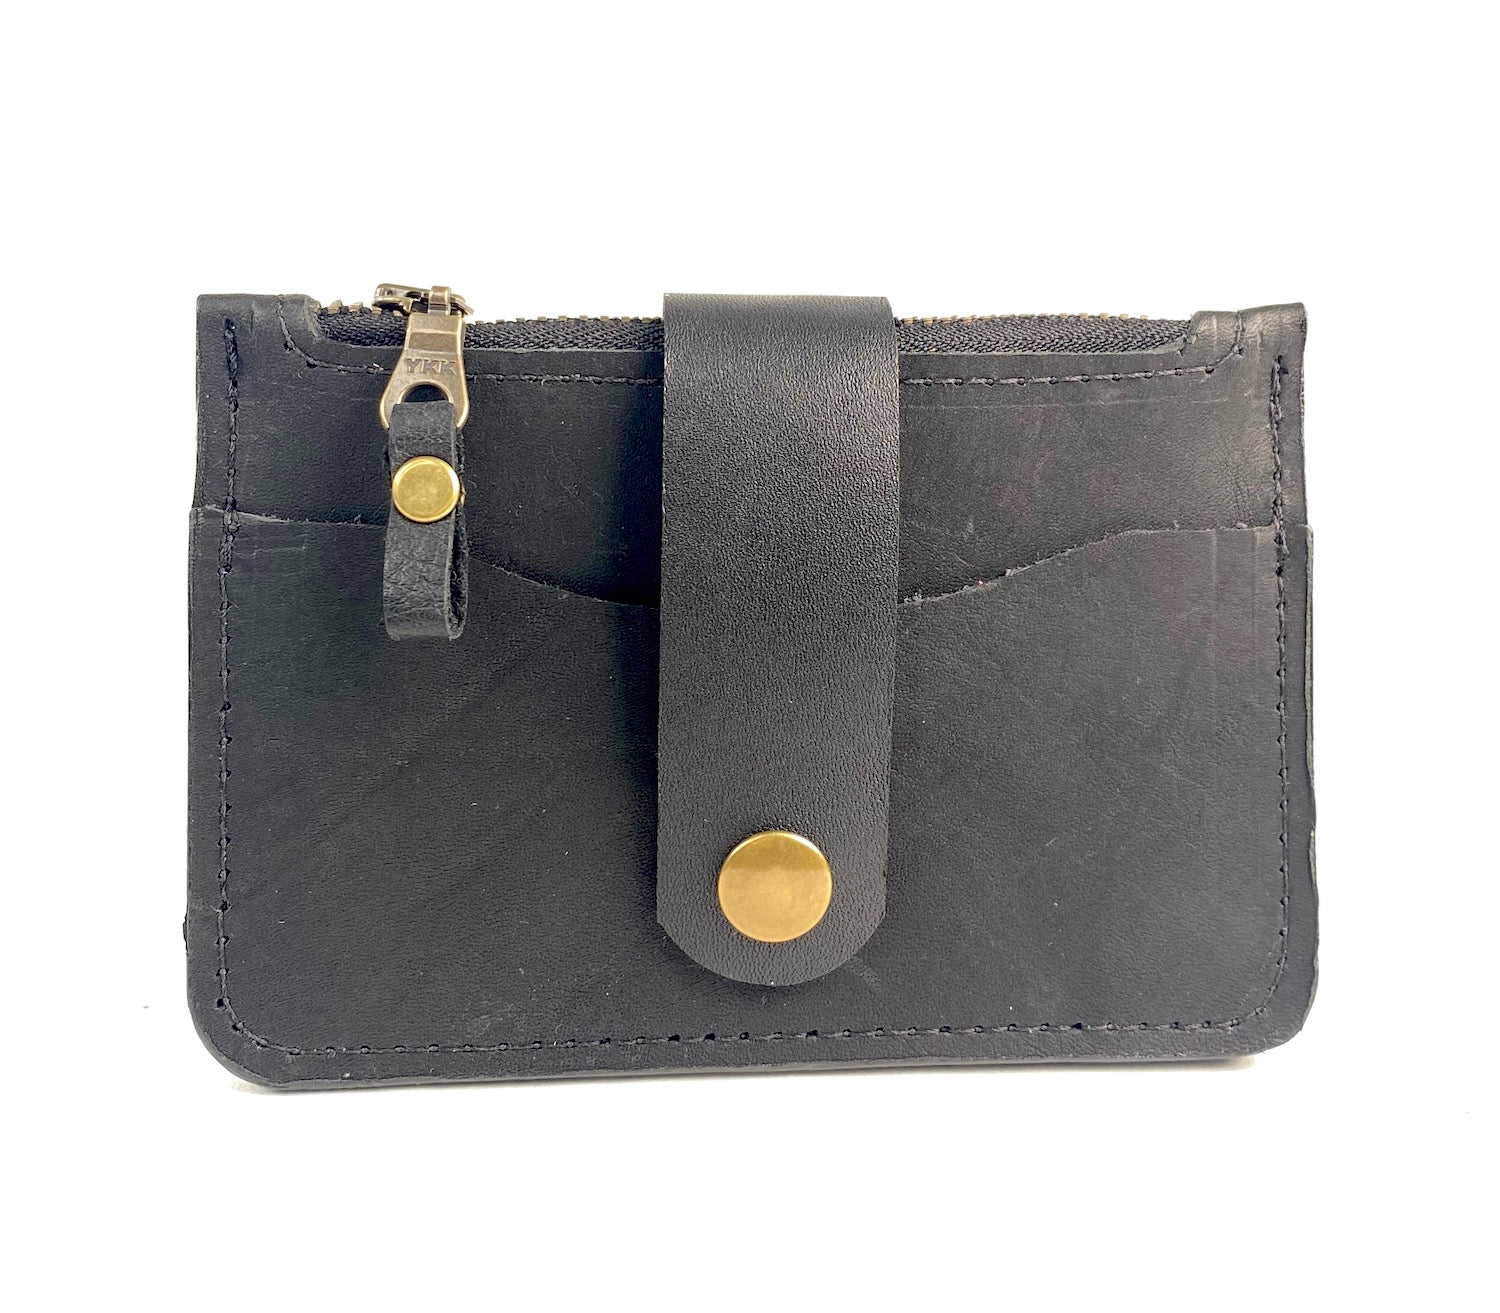 Black leather minimalist wallet.